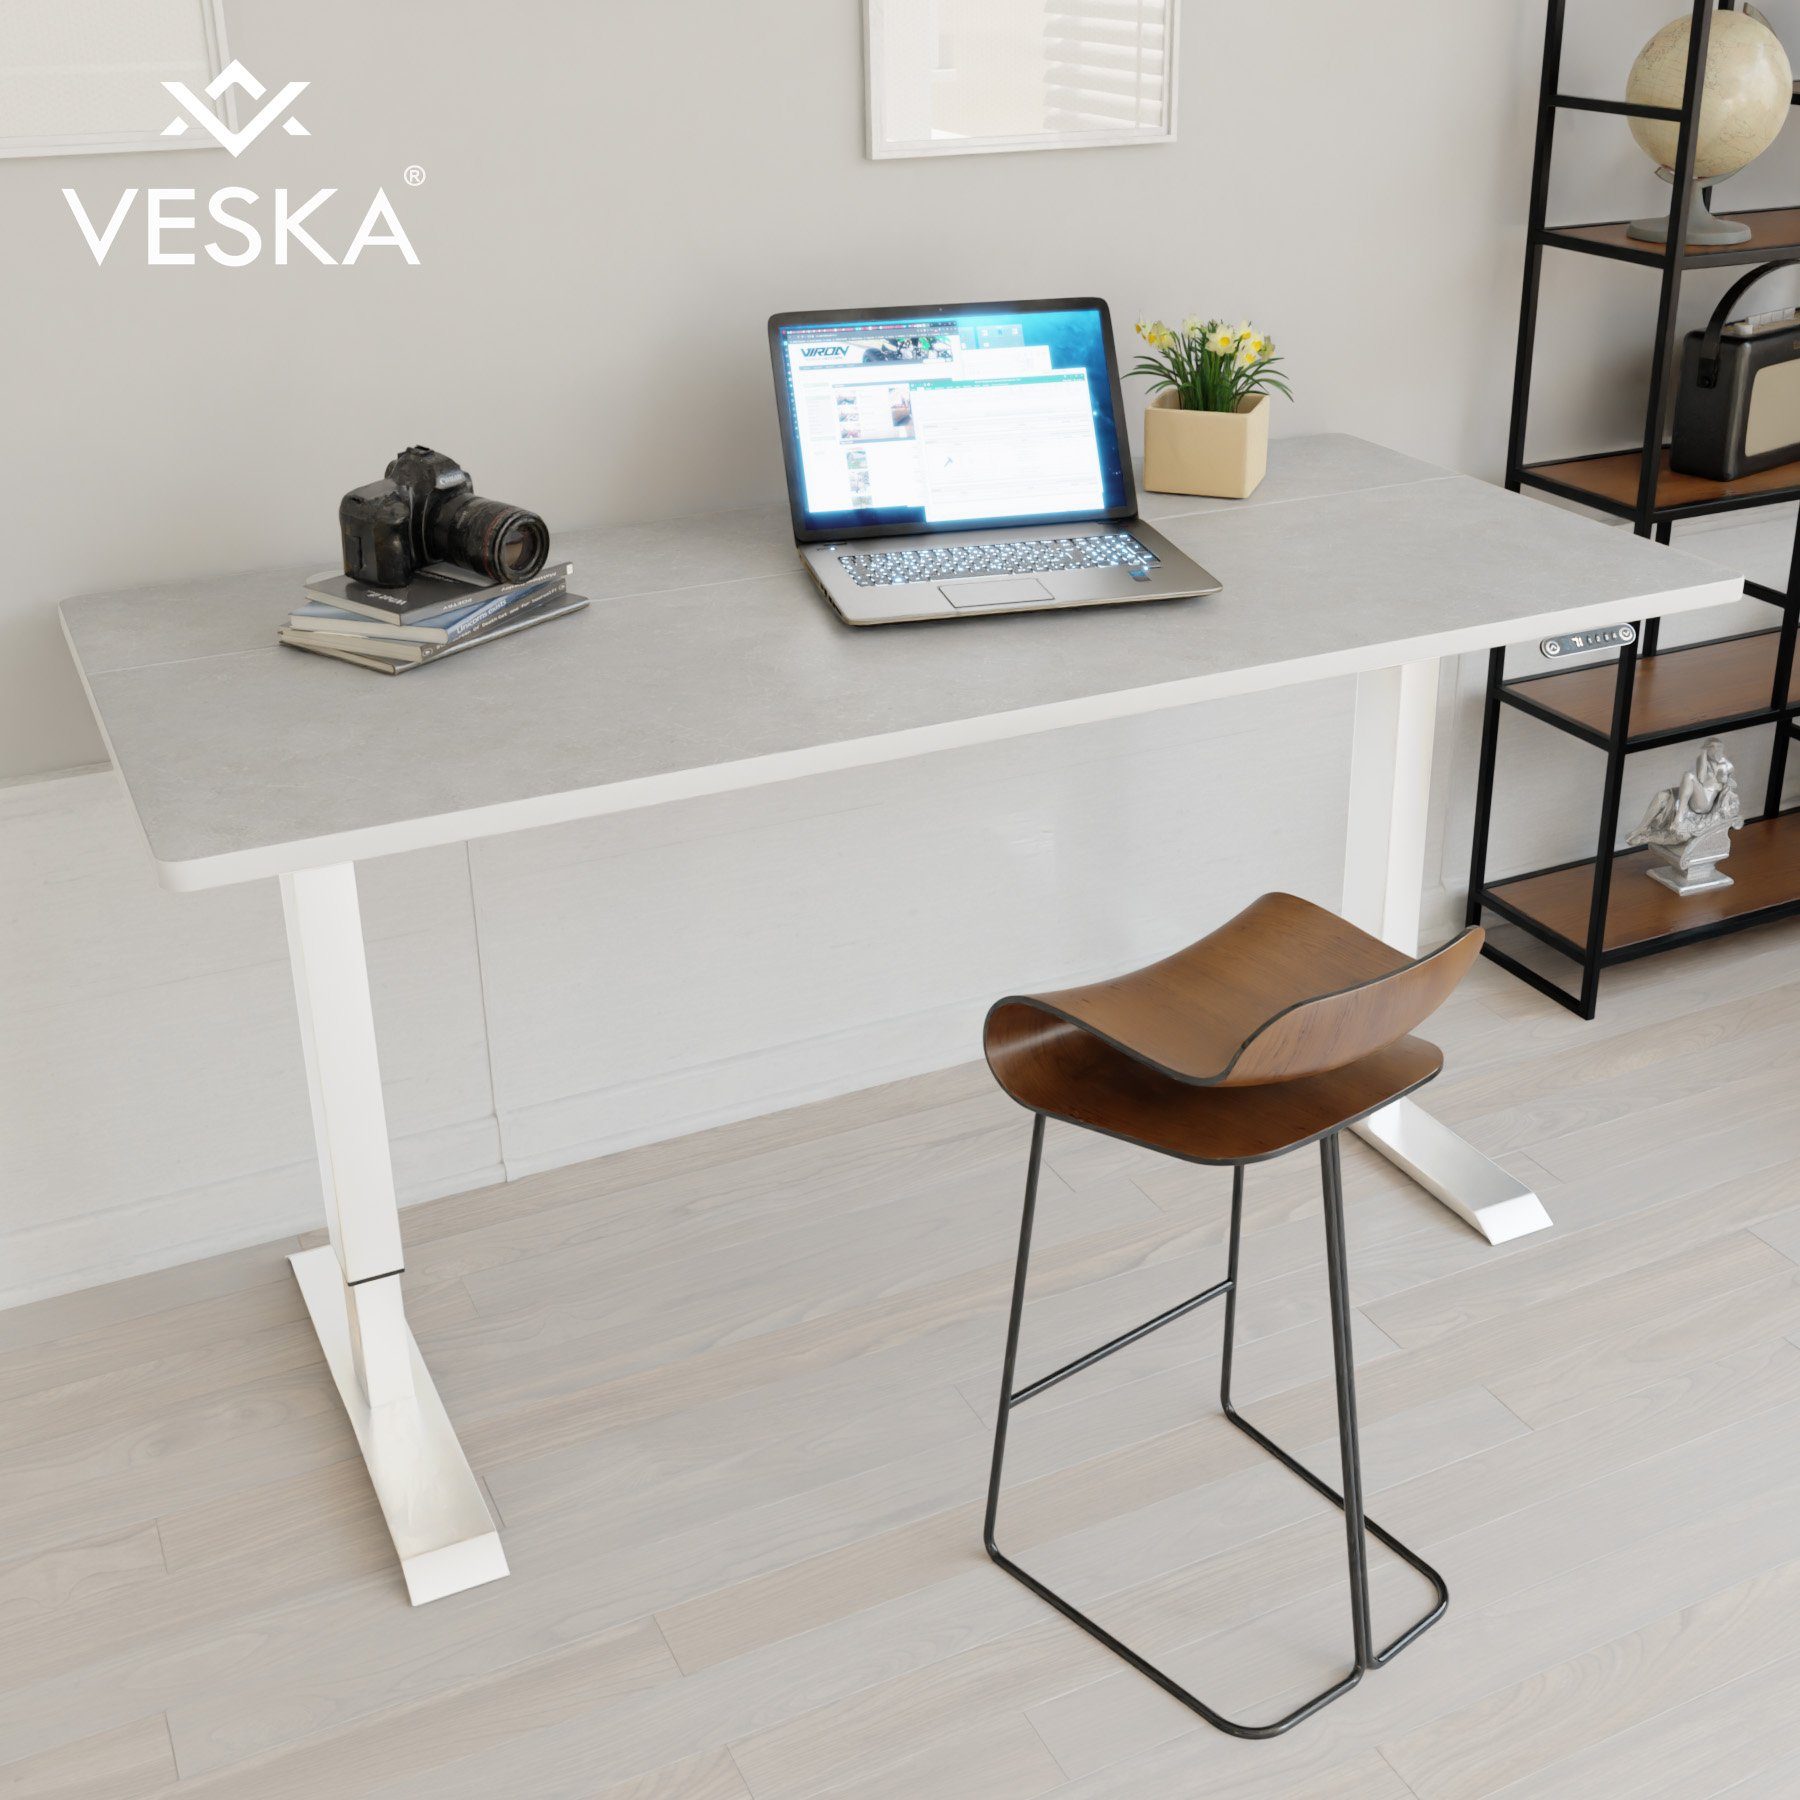 VESKA Schreibtisch Höhenverstellbar 140 x 70 cm - Bürotisch Elektrisch mit Touchscreen - Sitz- & Stehpult Home Office Weiß | Stein-Grau | Kinderschreibtische